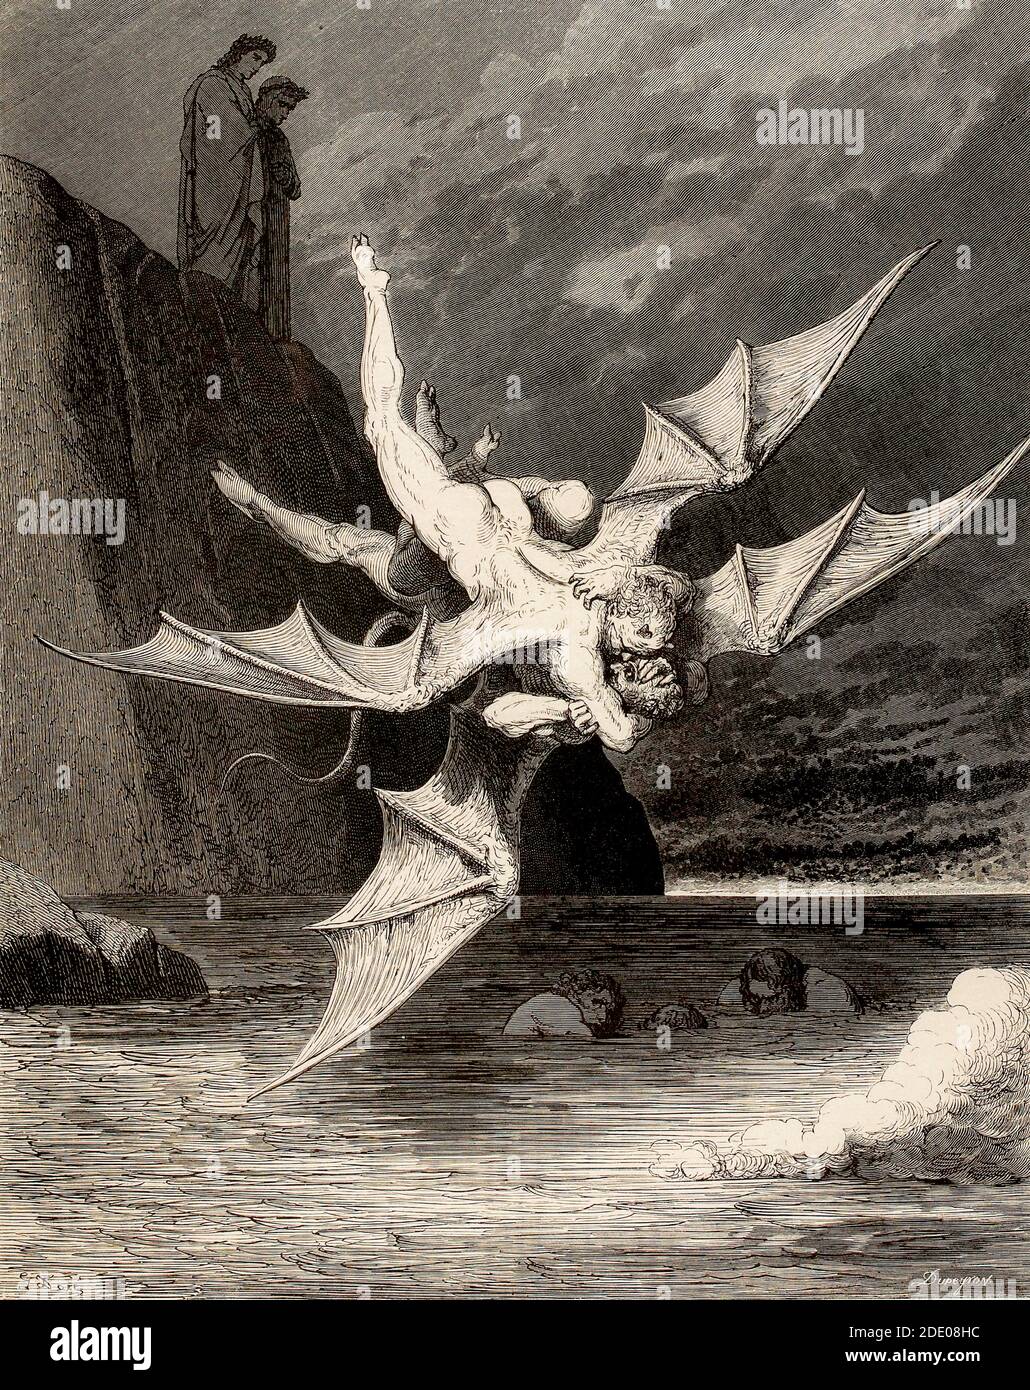 Dante Divina Commedia - Infierno - XXII Canto - scuffle De los demonios - VIII Círculo - ilustración de Gustave Doré Foto de stock